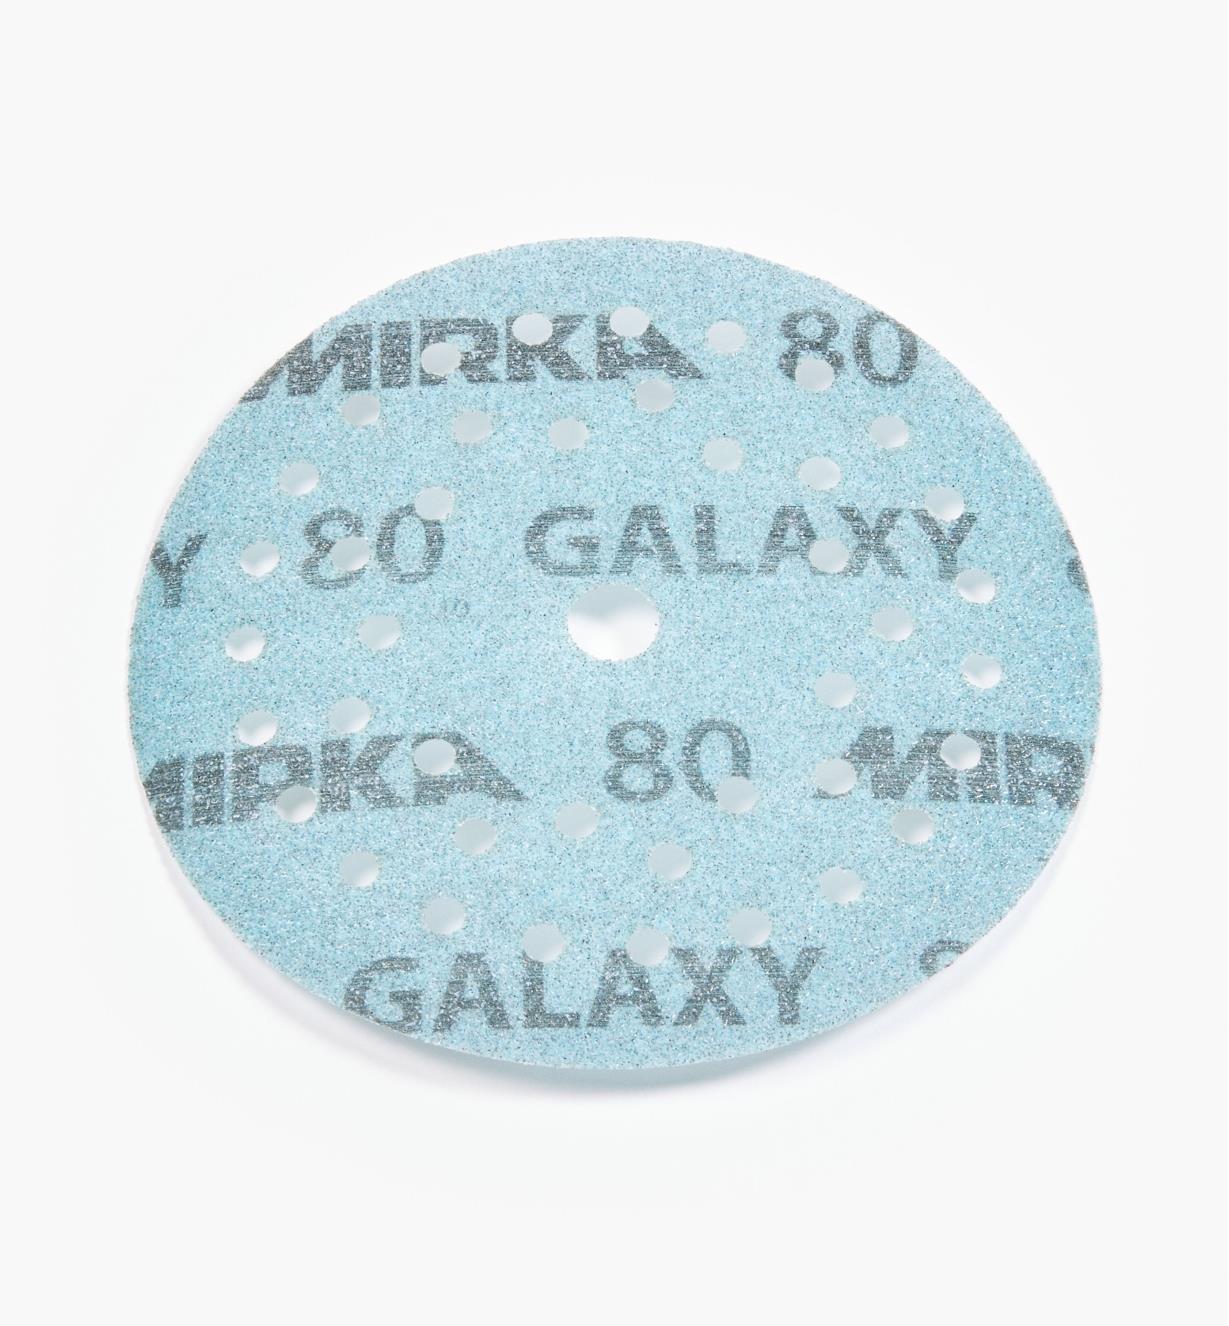 08K1342 - Disque abrasif autoagrippant Galaxy Multifit, 5 po, grain 80, l'unité